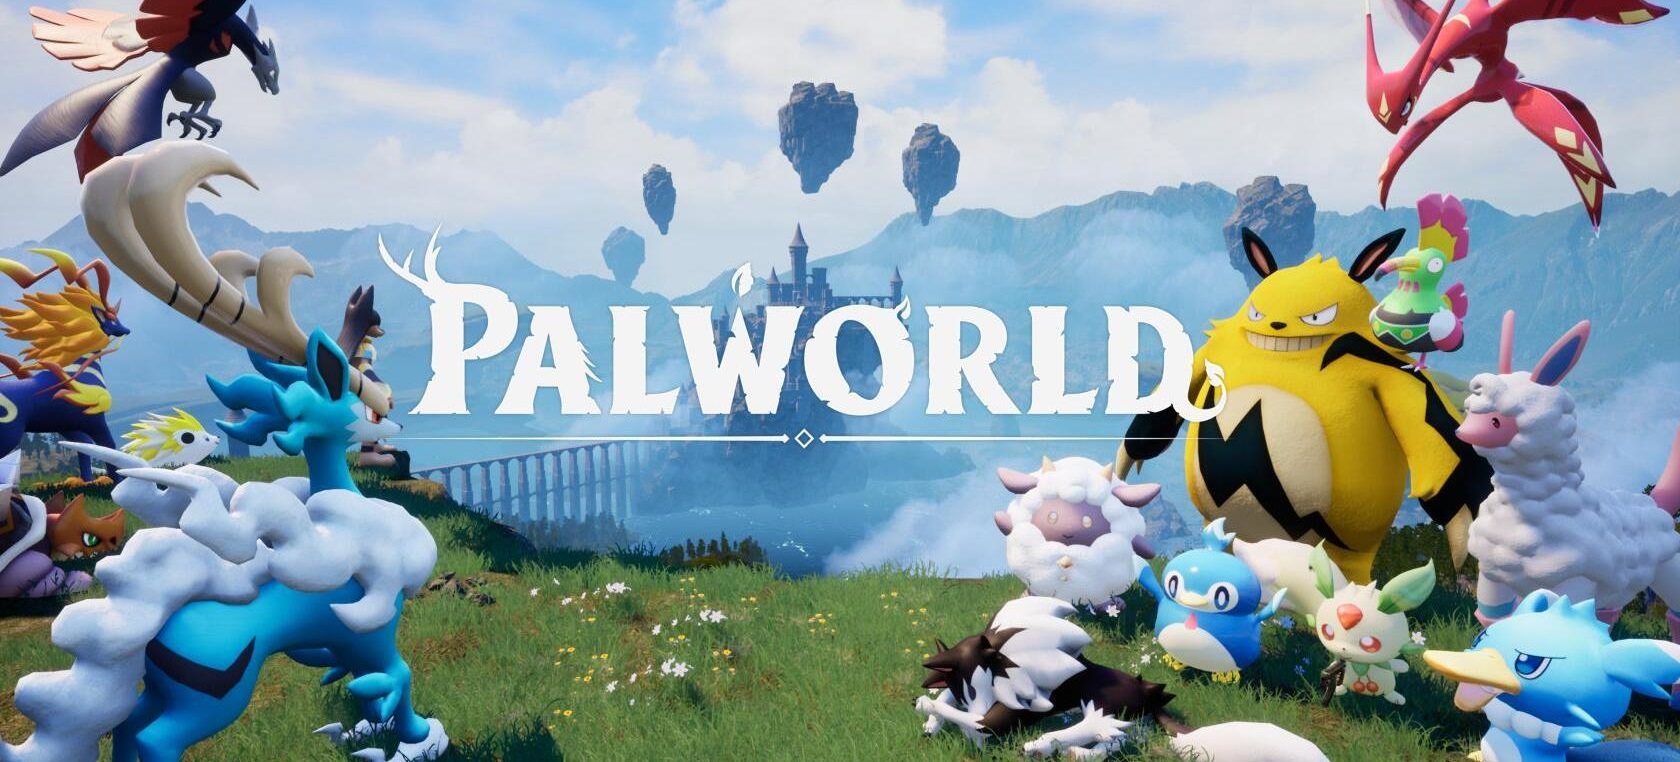 Palworld游戏专区